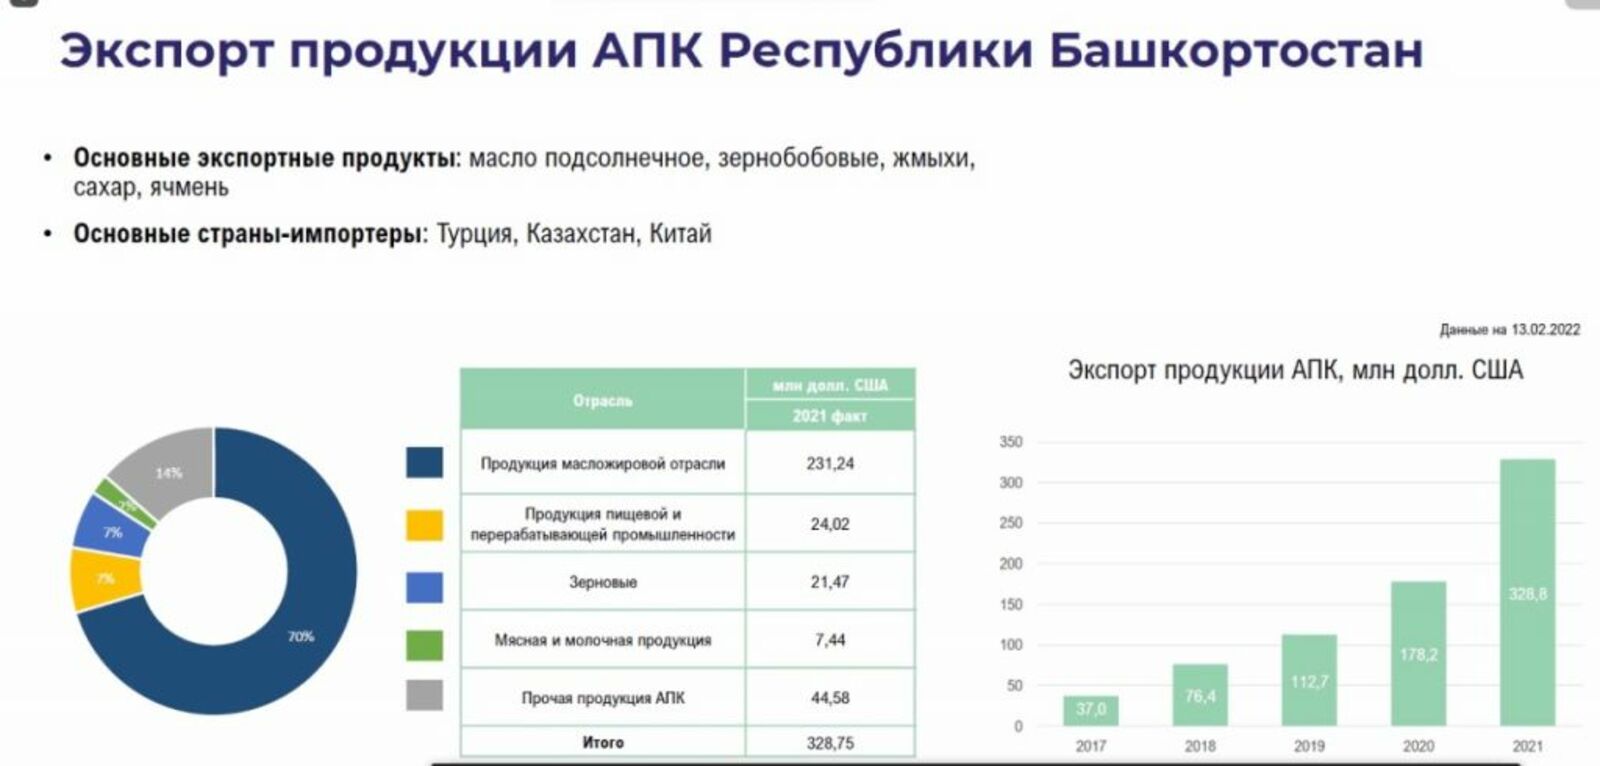 Башкортостан в два раза перевыполнил план по экспорту продукции АПК